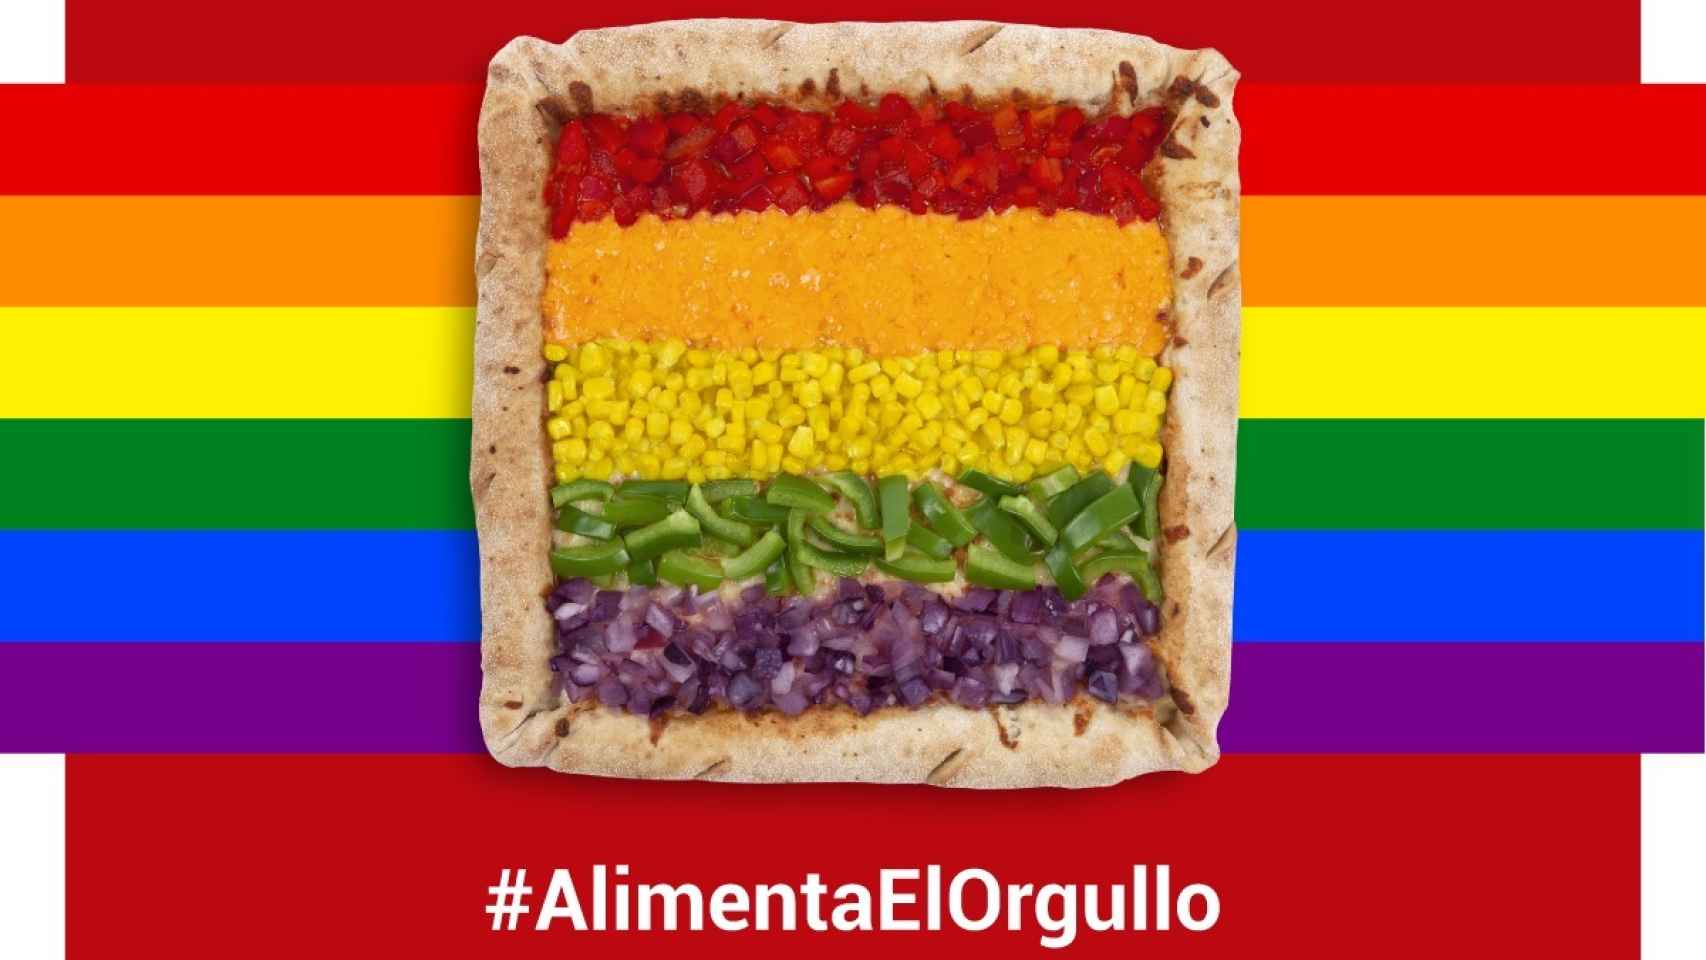 La Telepizza Rainbow que regalará la cadena de restaurantes.